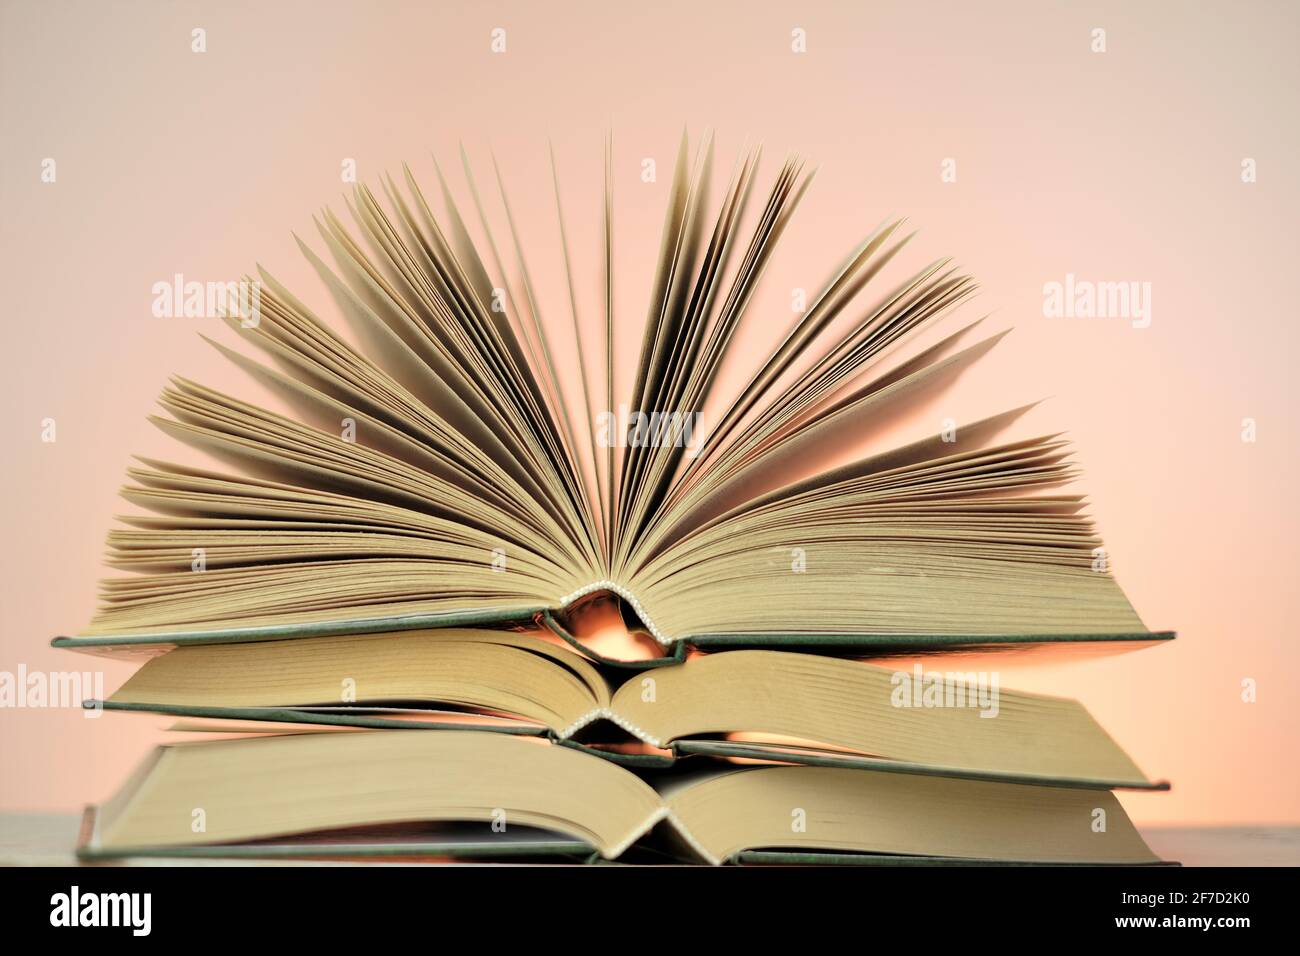 Lettura libri e letteratura.Open libri stack su uno sfondo rosa chiaro. Studio e concetto di istruzione. Primo piano del libro pages.Learning e conoscenza Foto Stock